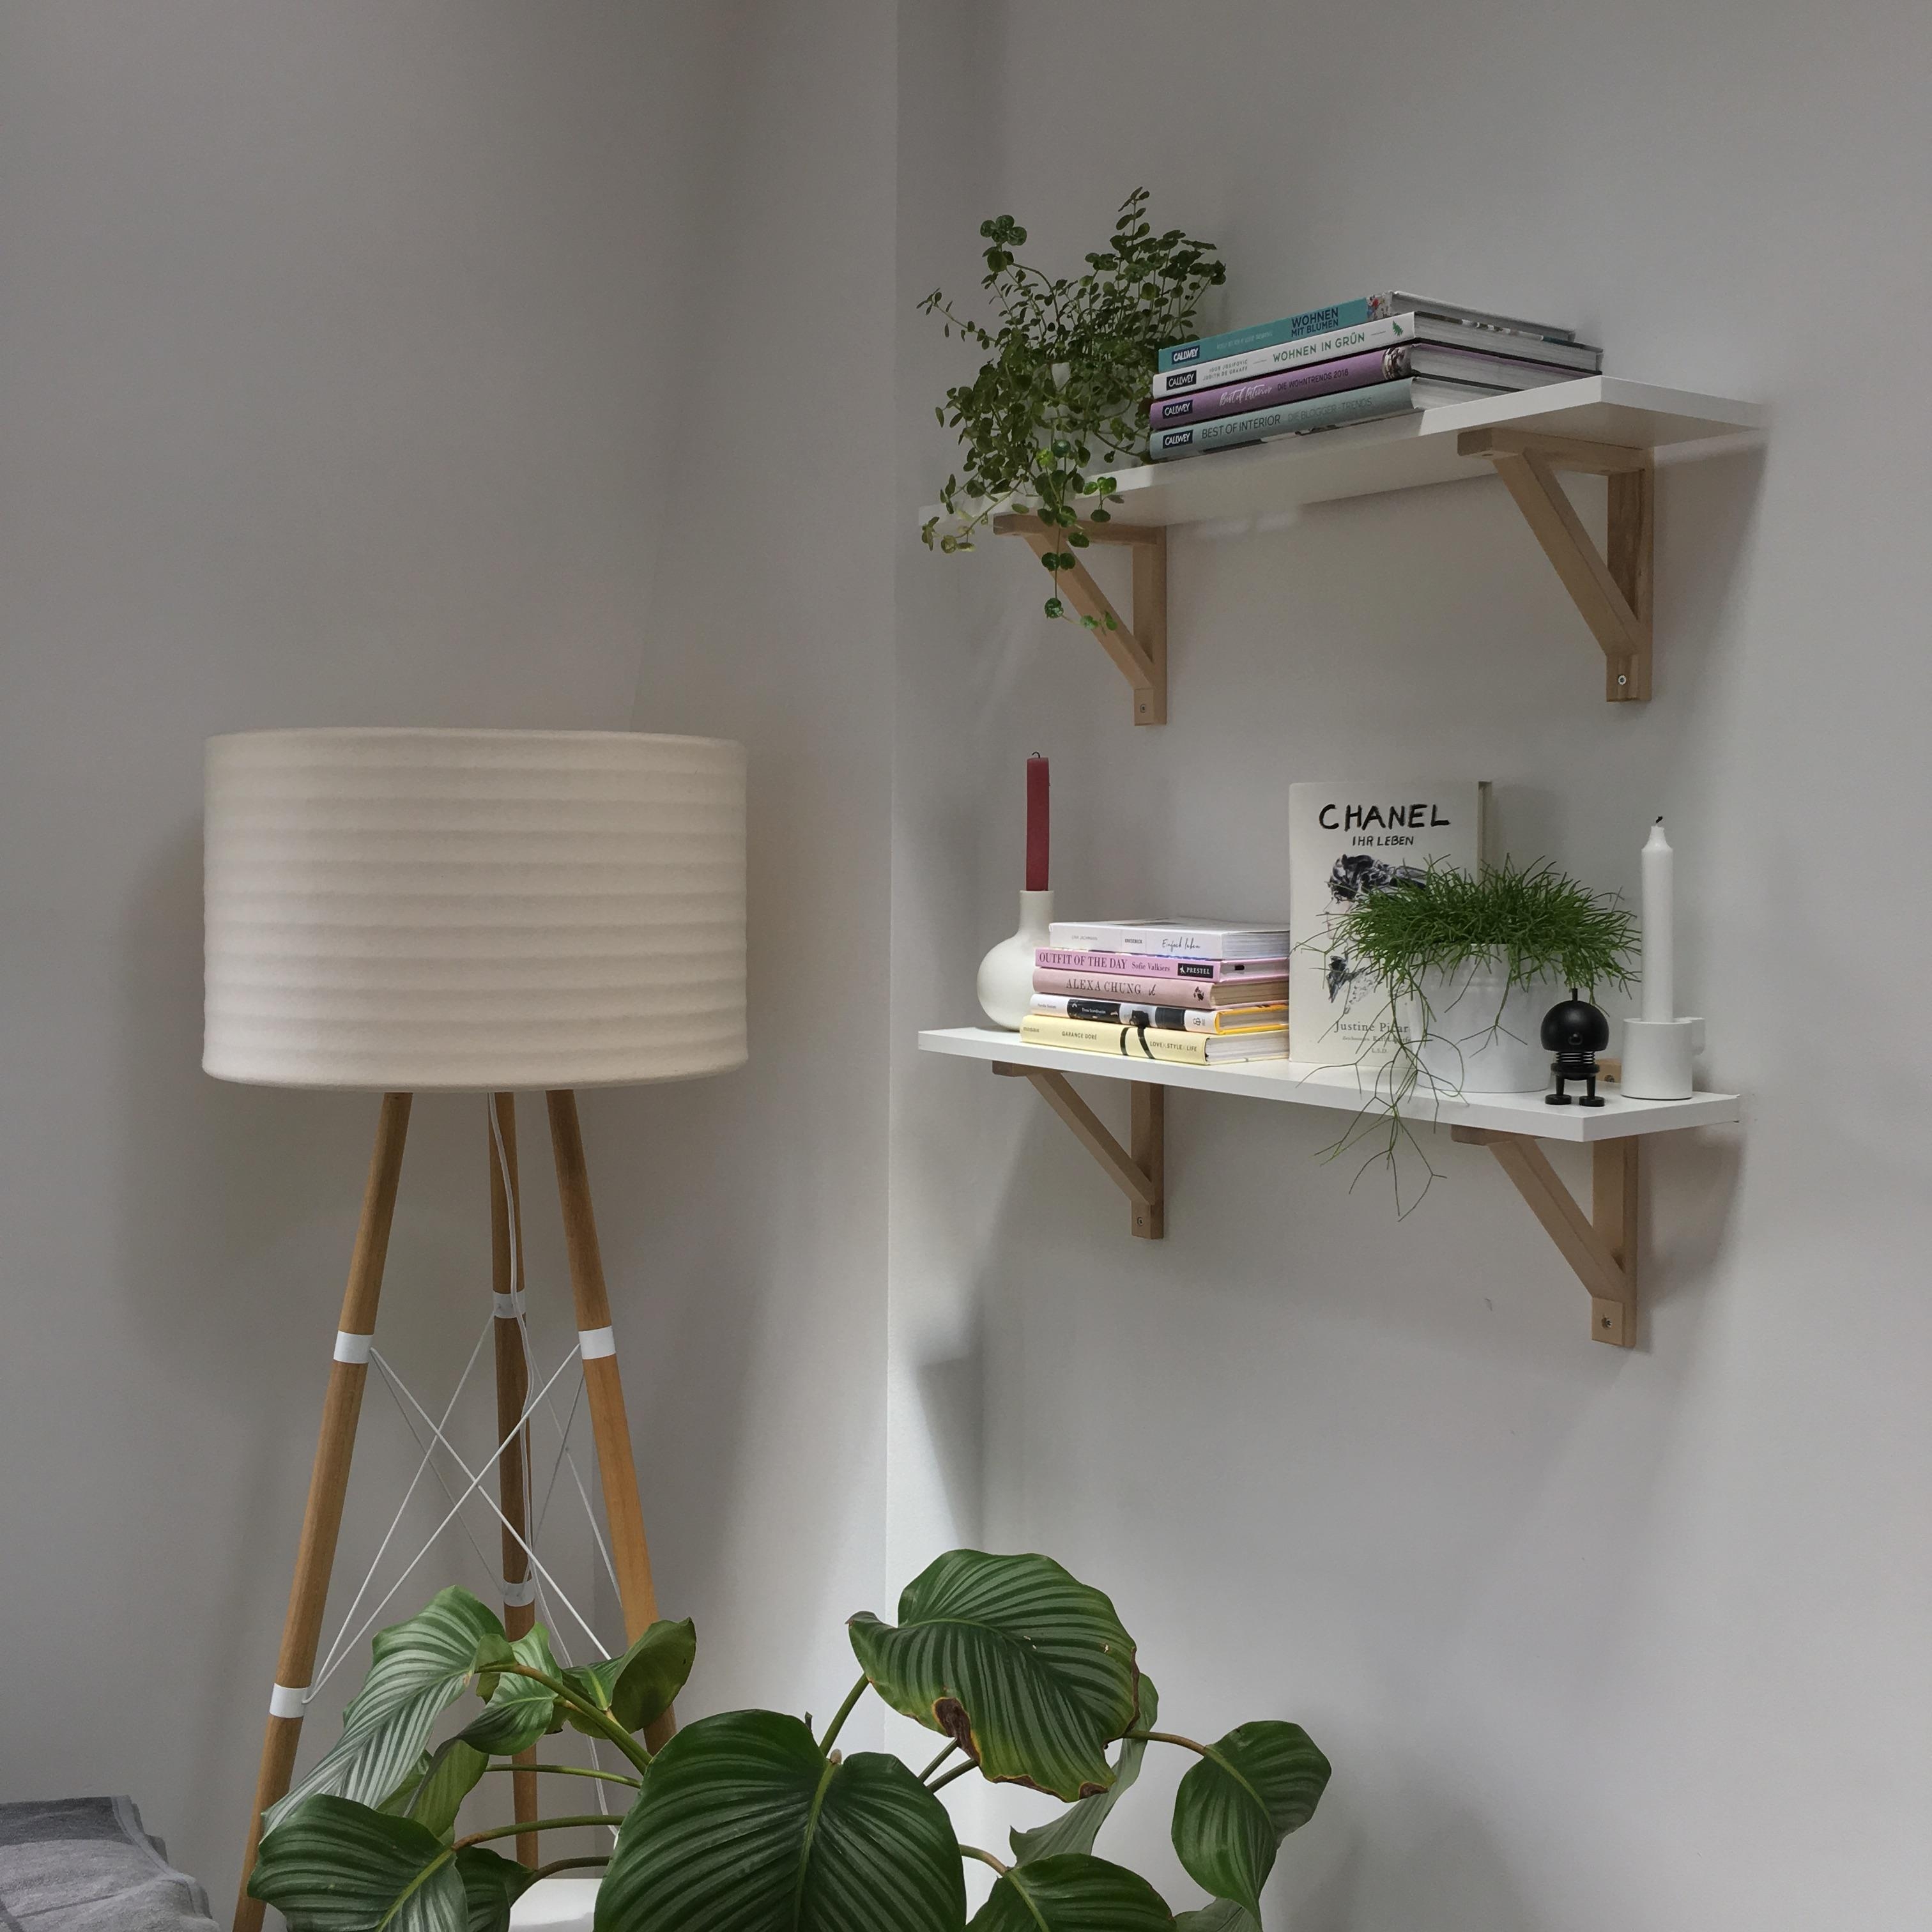 Selbst montiert 😊
#shelfie #skandinavisch #white #pflanzenliebe #greens #regale #living #interior #wohnzimmer